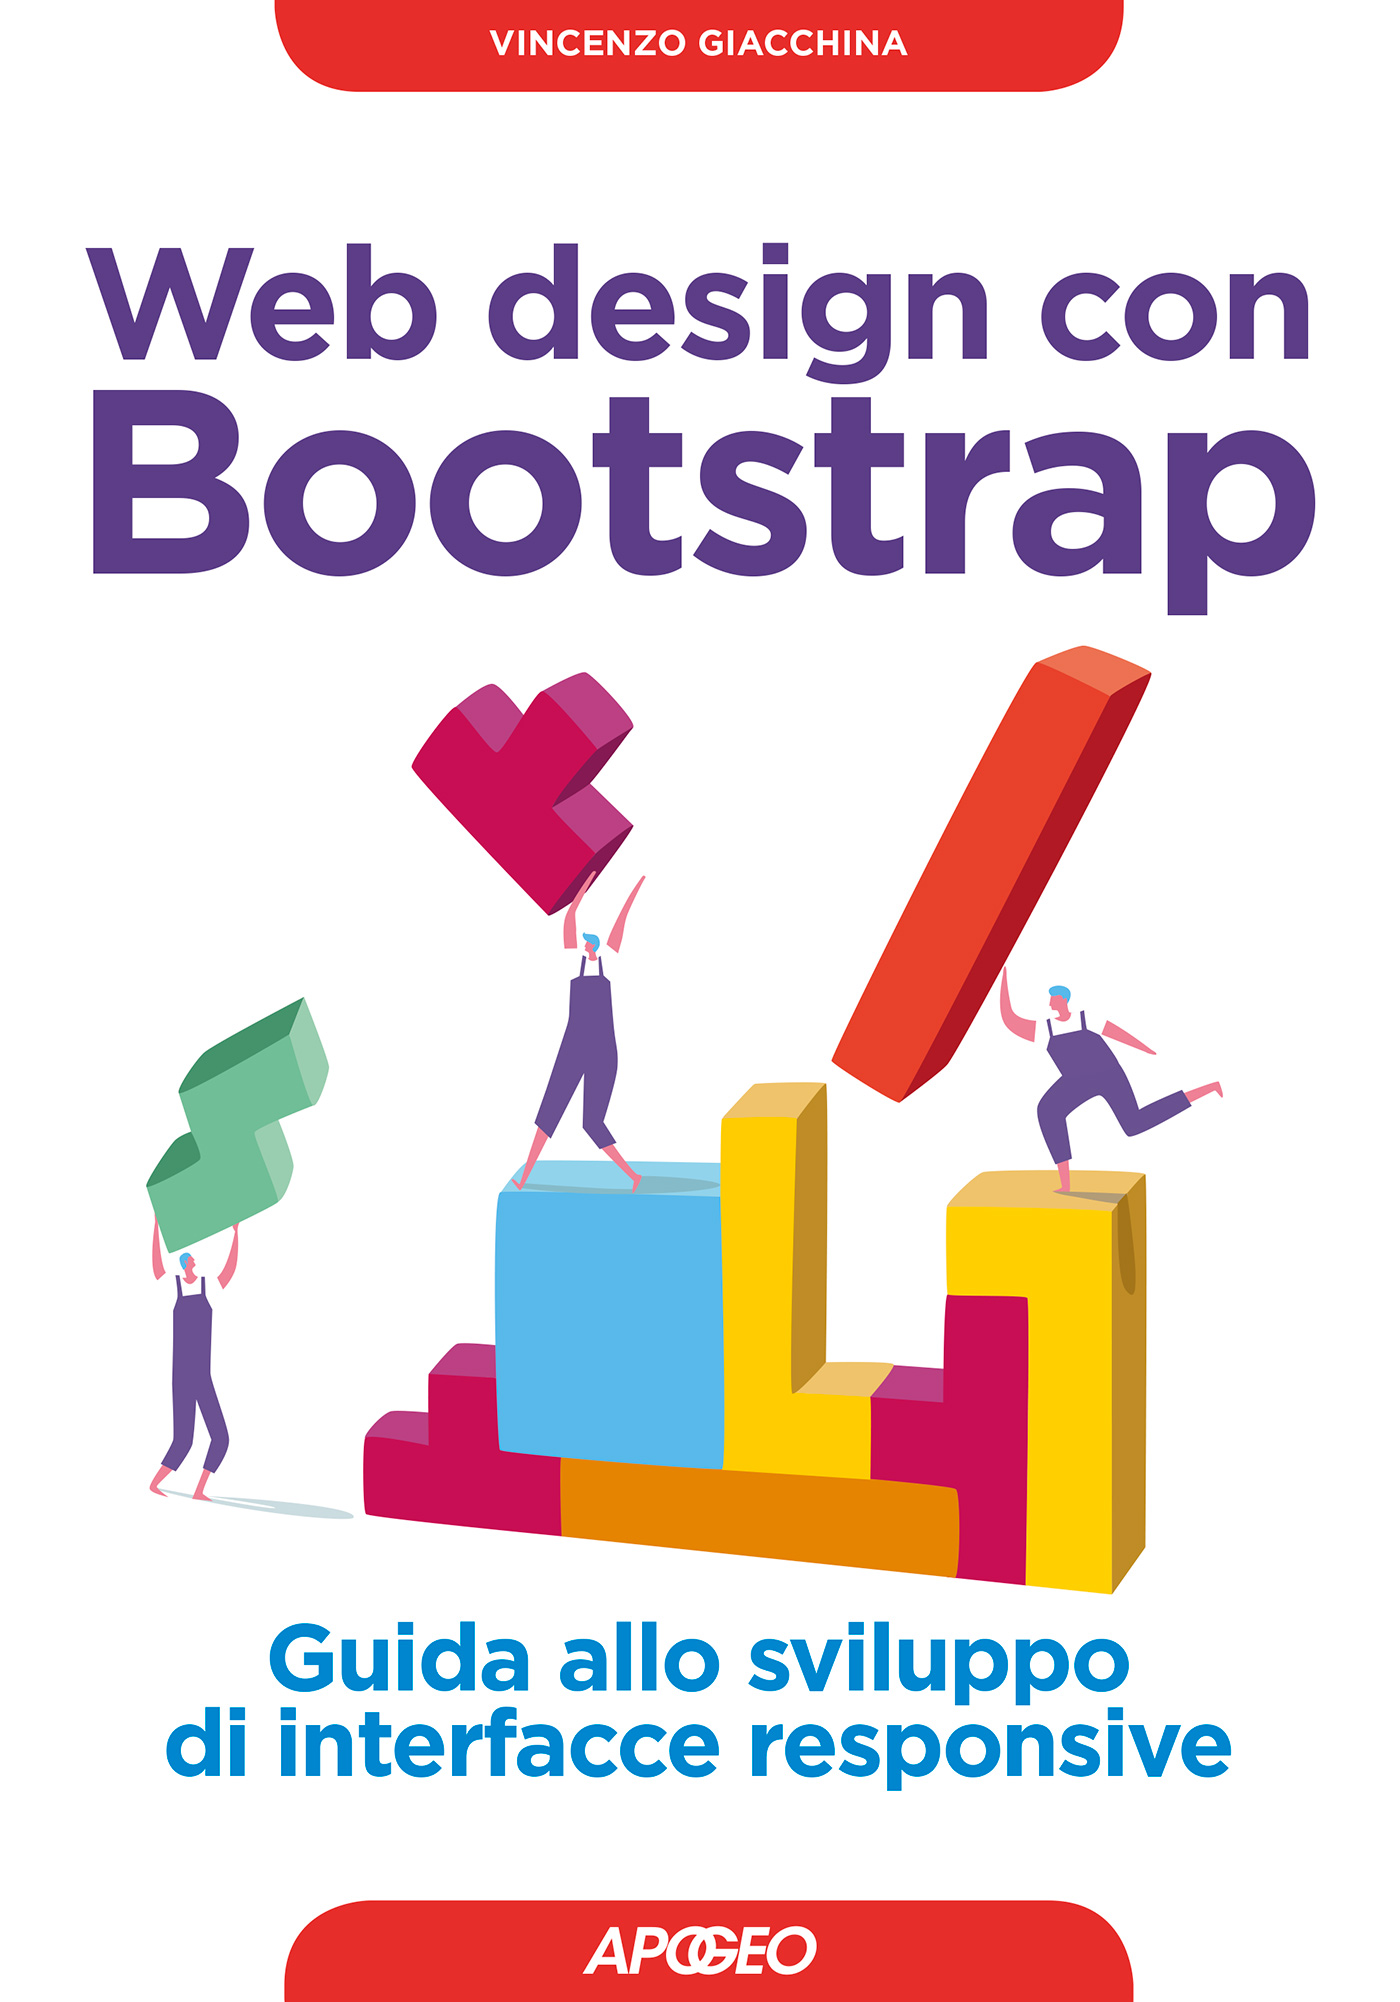 Web Design con Bootstrap: tipografia e immagini